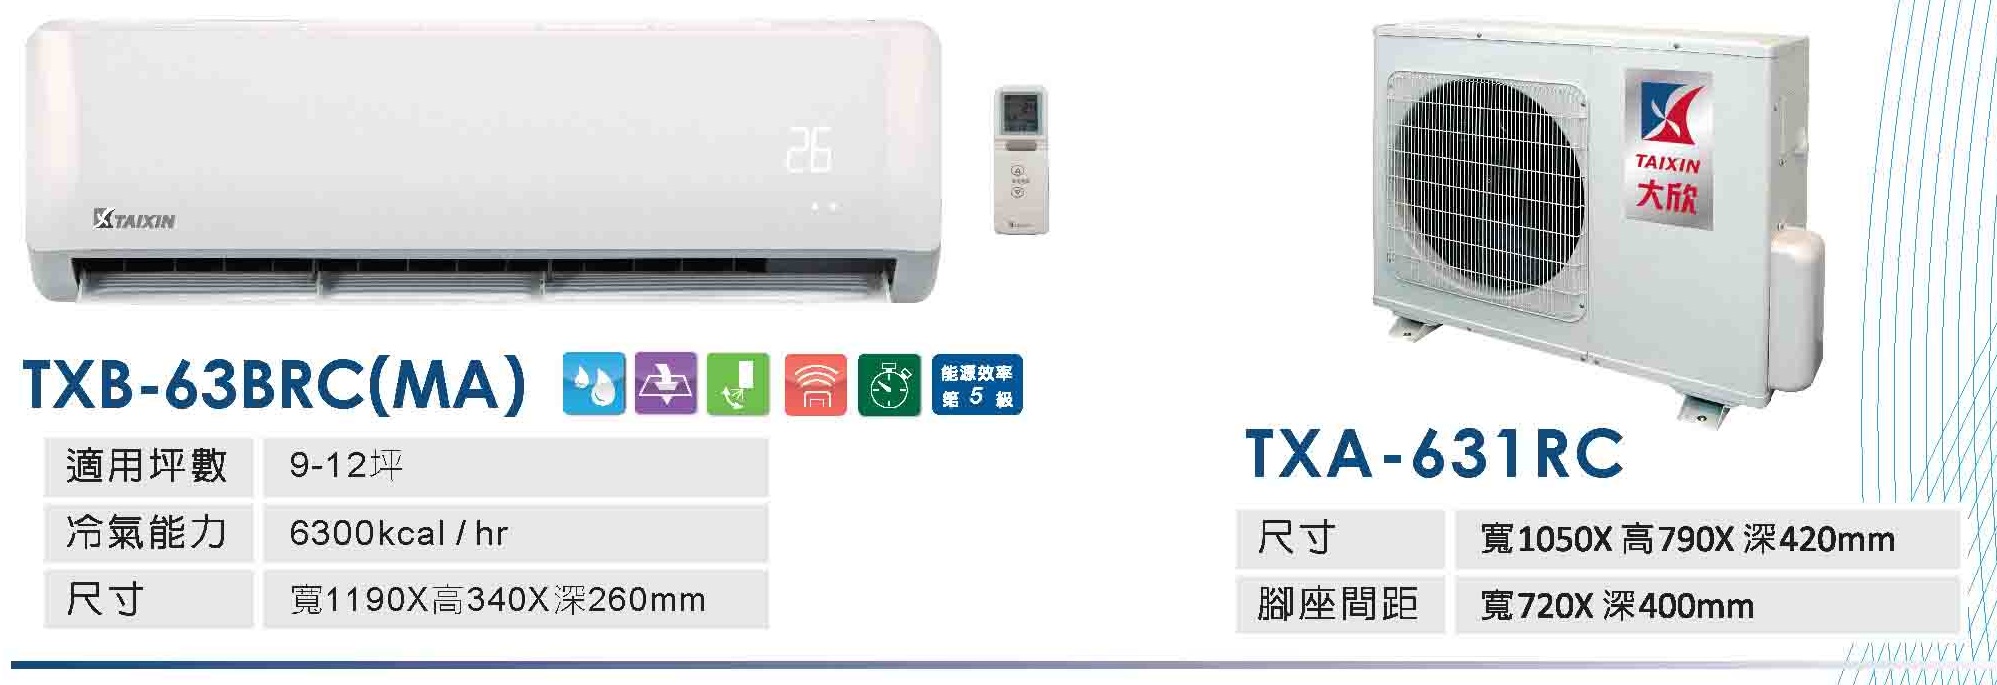 大欣冷氣 台灣製造  品質可靠 MIT冷氣 台灣冷氣機生產工廠 冷氣租賃 Taiwan air conditioner manufacturer 